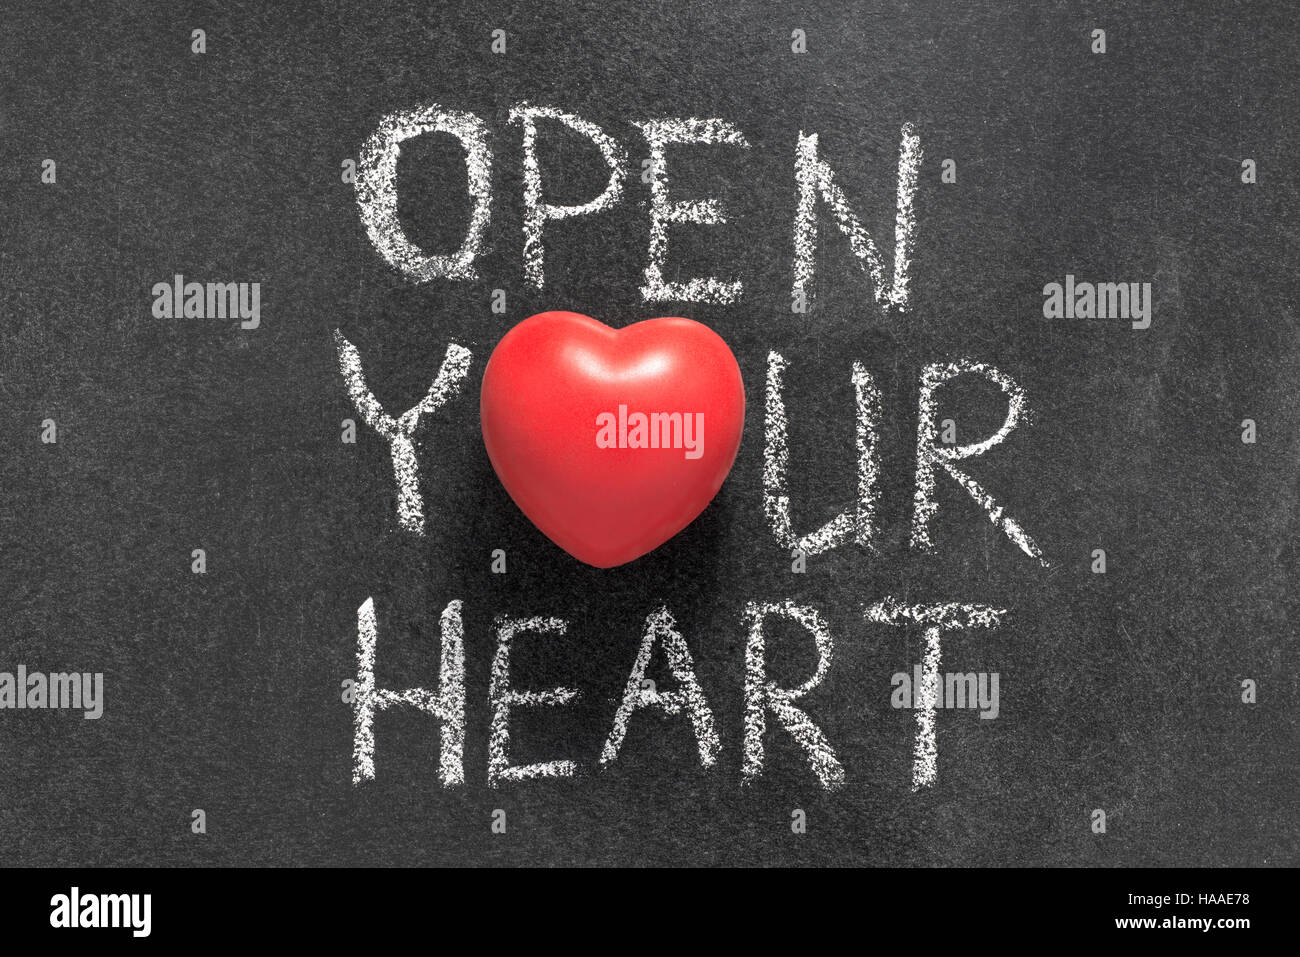 Öffnen Sie Ihr Herz-Satz handschriftlich auf Tafel mit Herzsymbol statt O Stockfoto